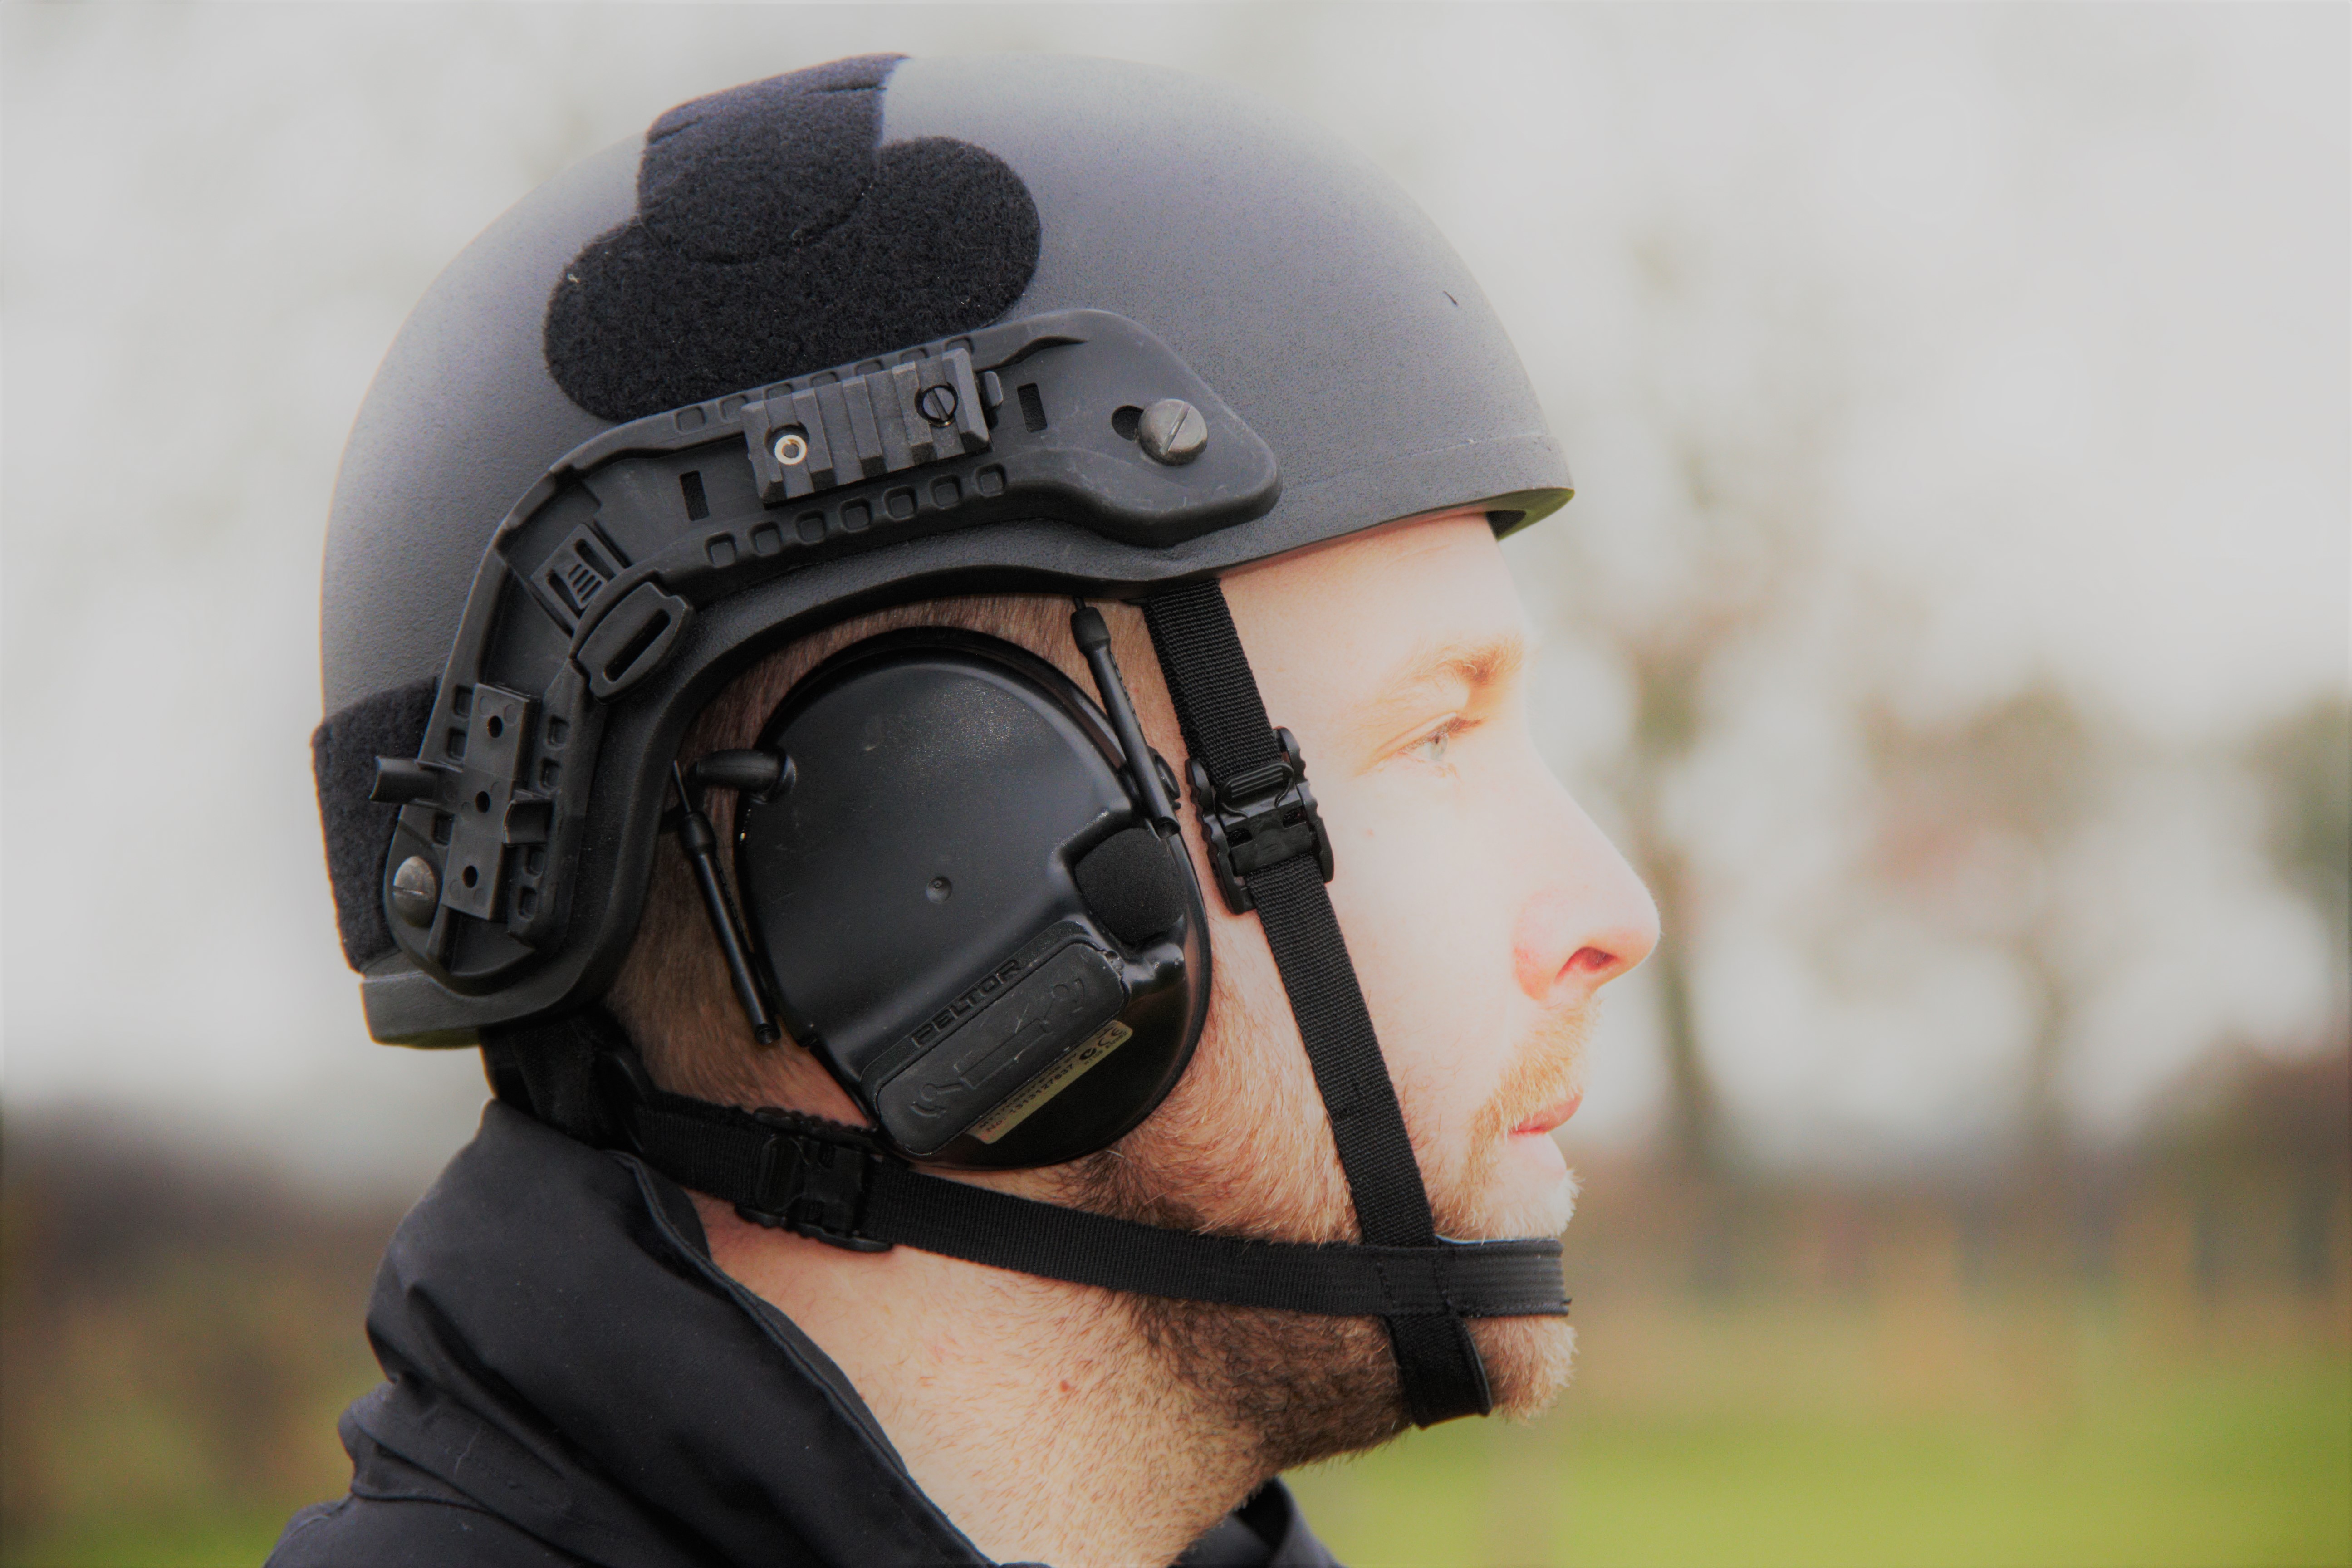 M6 - Viper 3 - Helmet, NIJ Level IIIA, 4Pt 7pad RD Harness with side rails